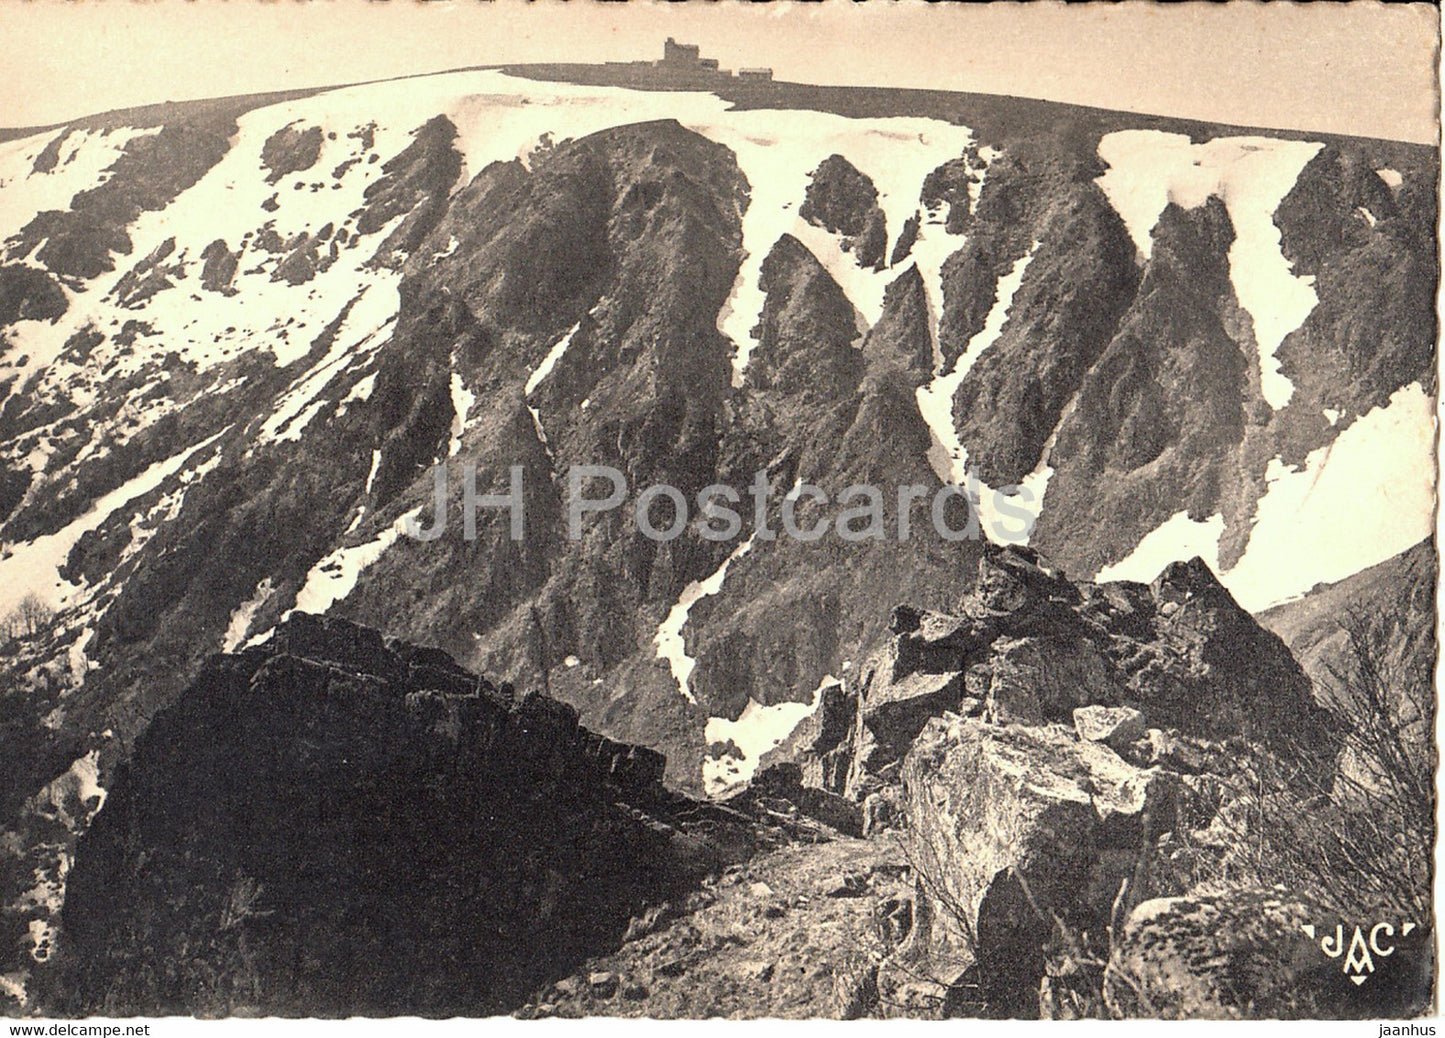 Vallee de Munster - Le Hohneck pris de rochers de la Martinswand - old postcard - 1942 - France - unused - JH Postcards